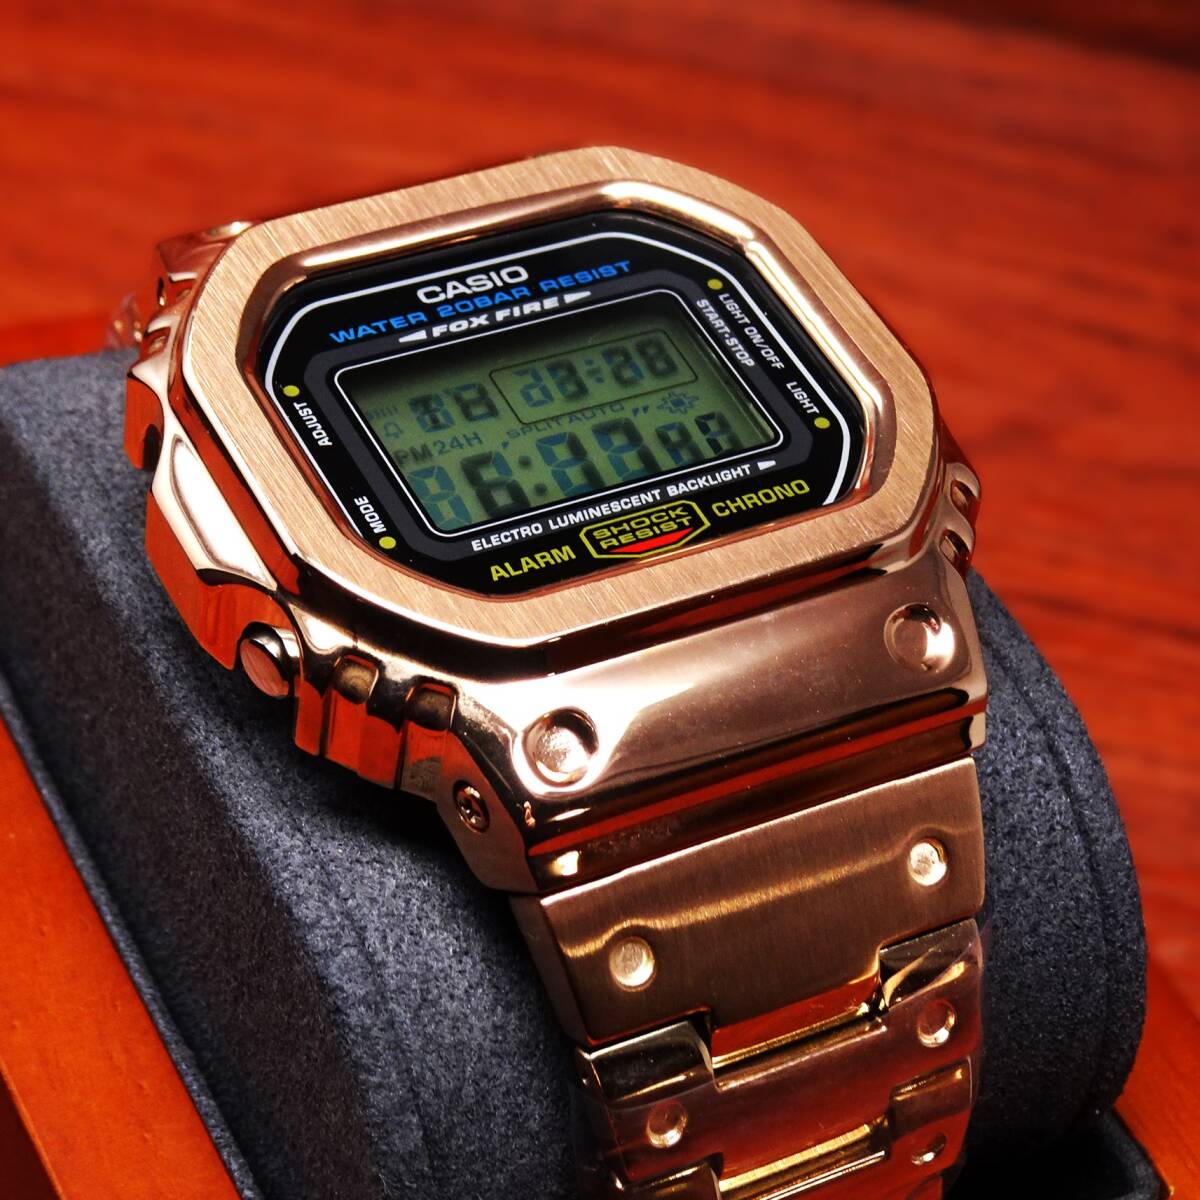 送料無料・新品・Gショックカスタム本体付きDW5600デジタル腕時計フルステンレス製ローズゴールドベゼル＆ベルト・フルメタルモデル の画像3